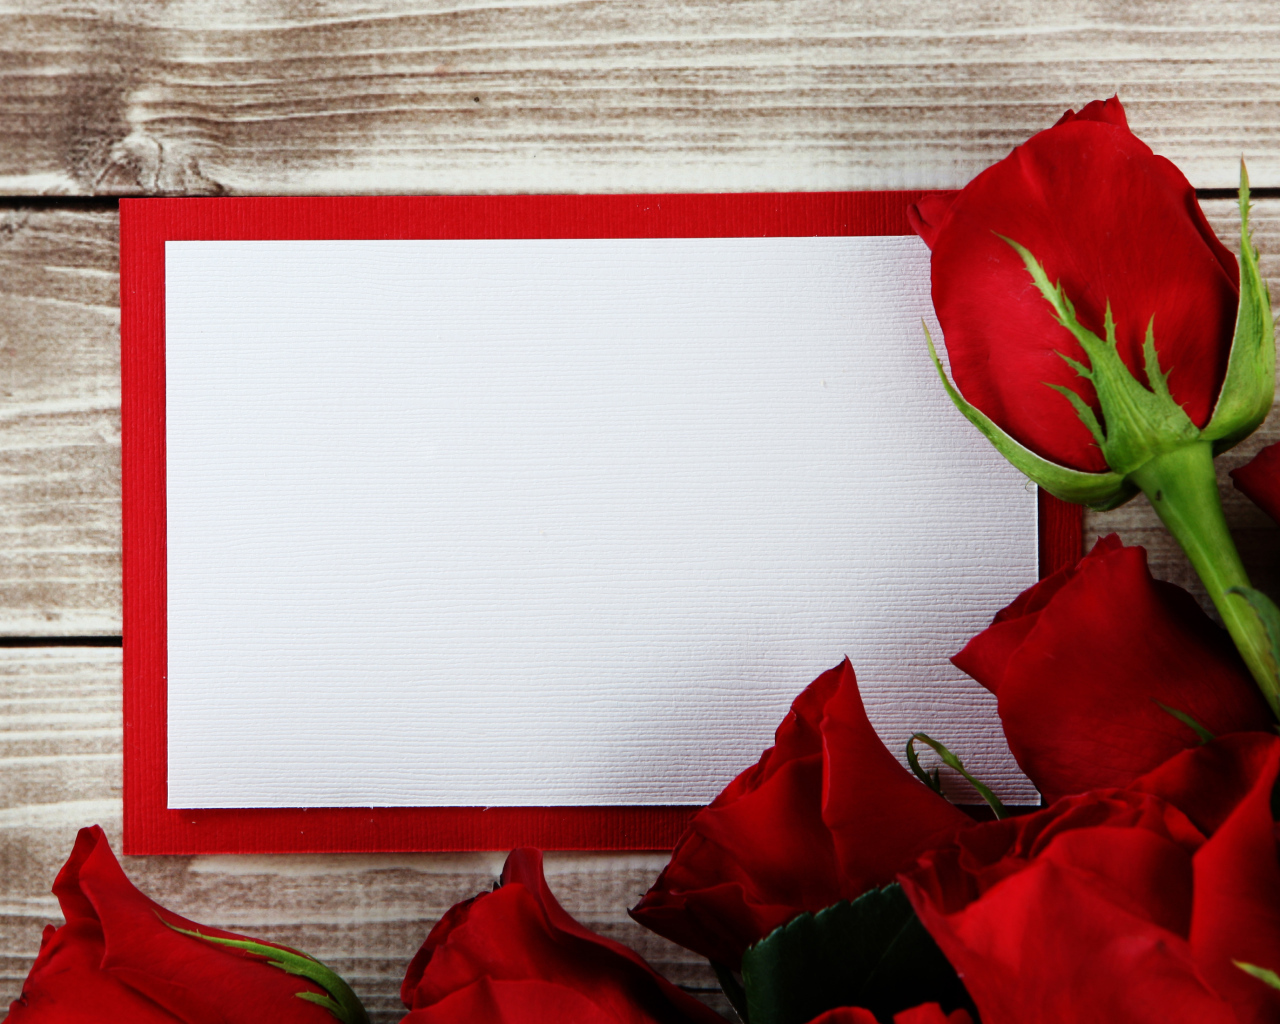 Букет роз  с листом бумаги в рамке фон для поздравительной открытки